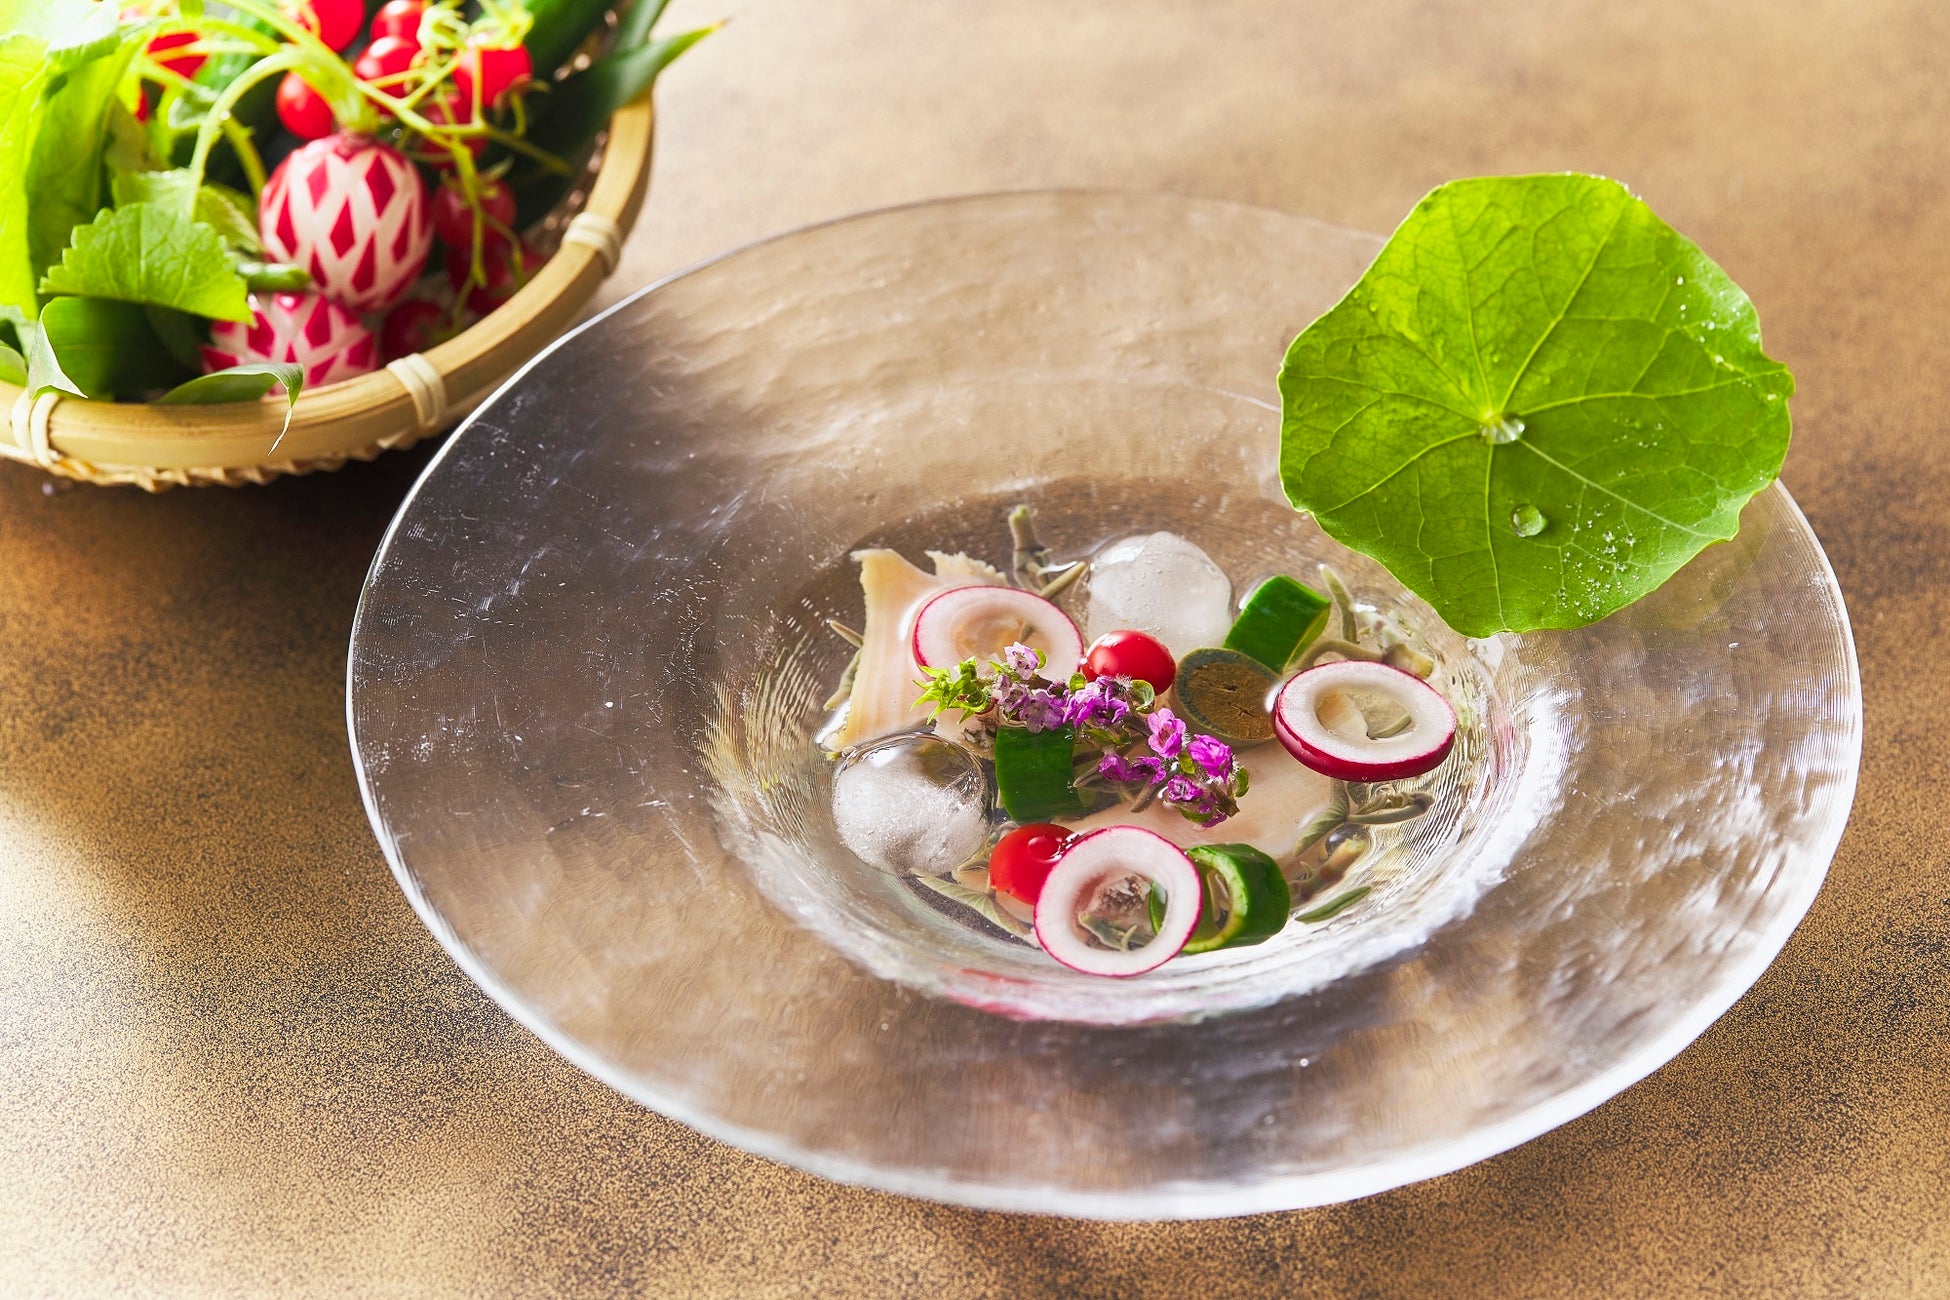 日本料理「花山椒」のお料理 蝦夷鮑とじゅん菜の水貝 土佐酢ジュレ添え